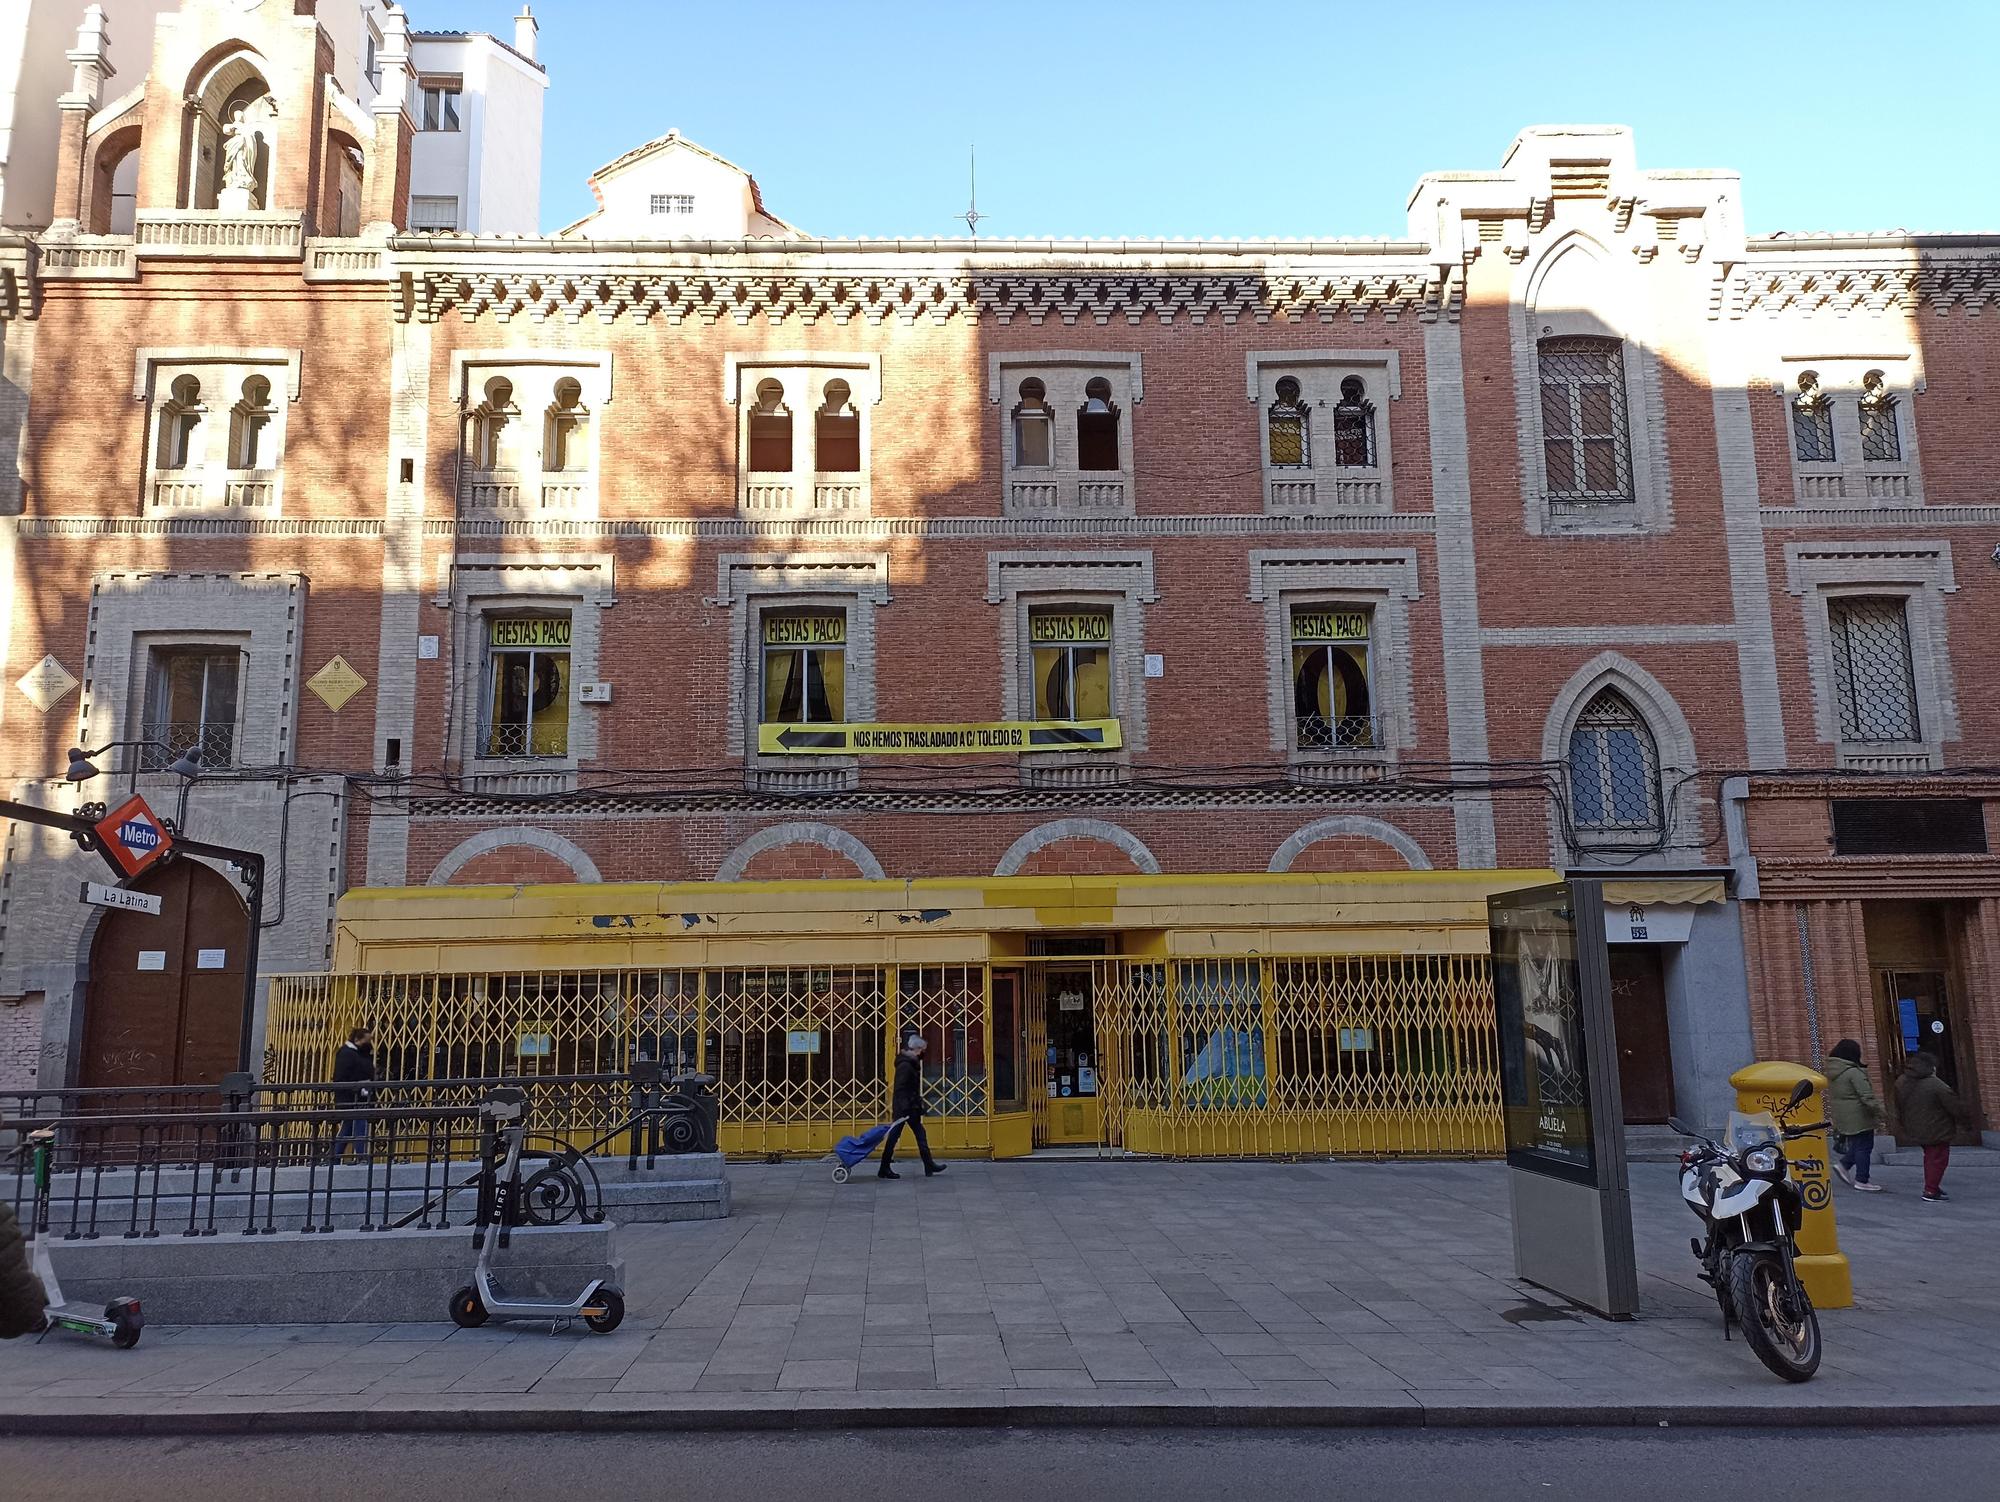 Vista de la tienda de disfraces Fiesta Paco, situada en la fachada del convento La Latina de la calle Toledo.